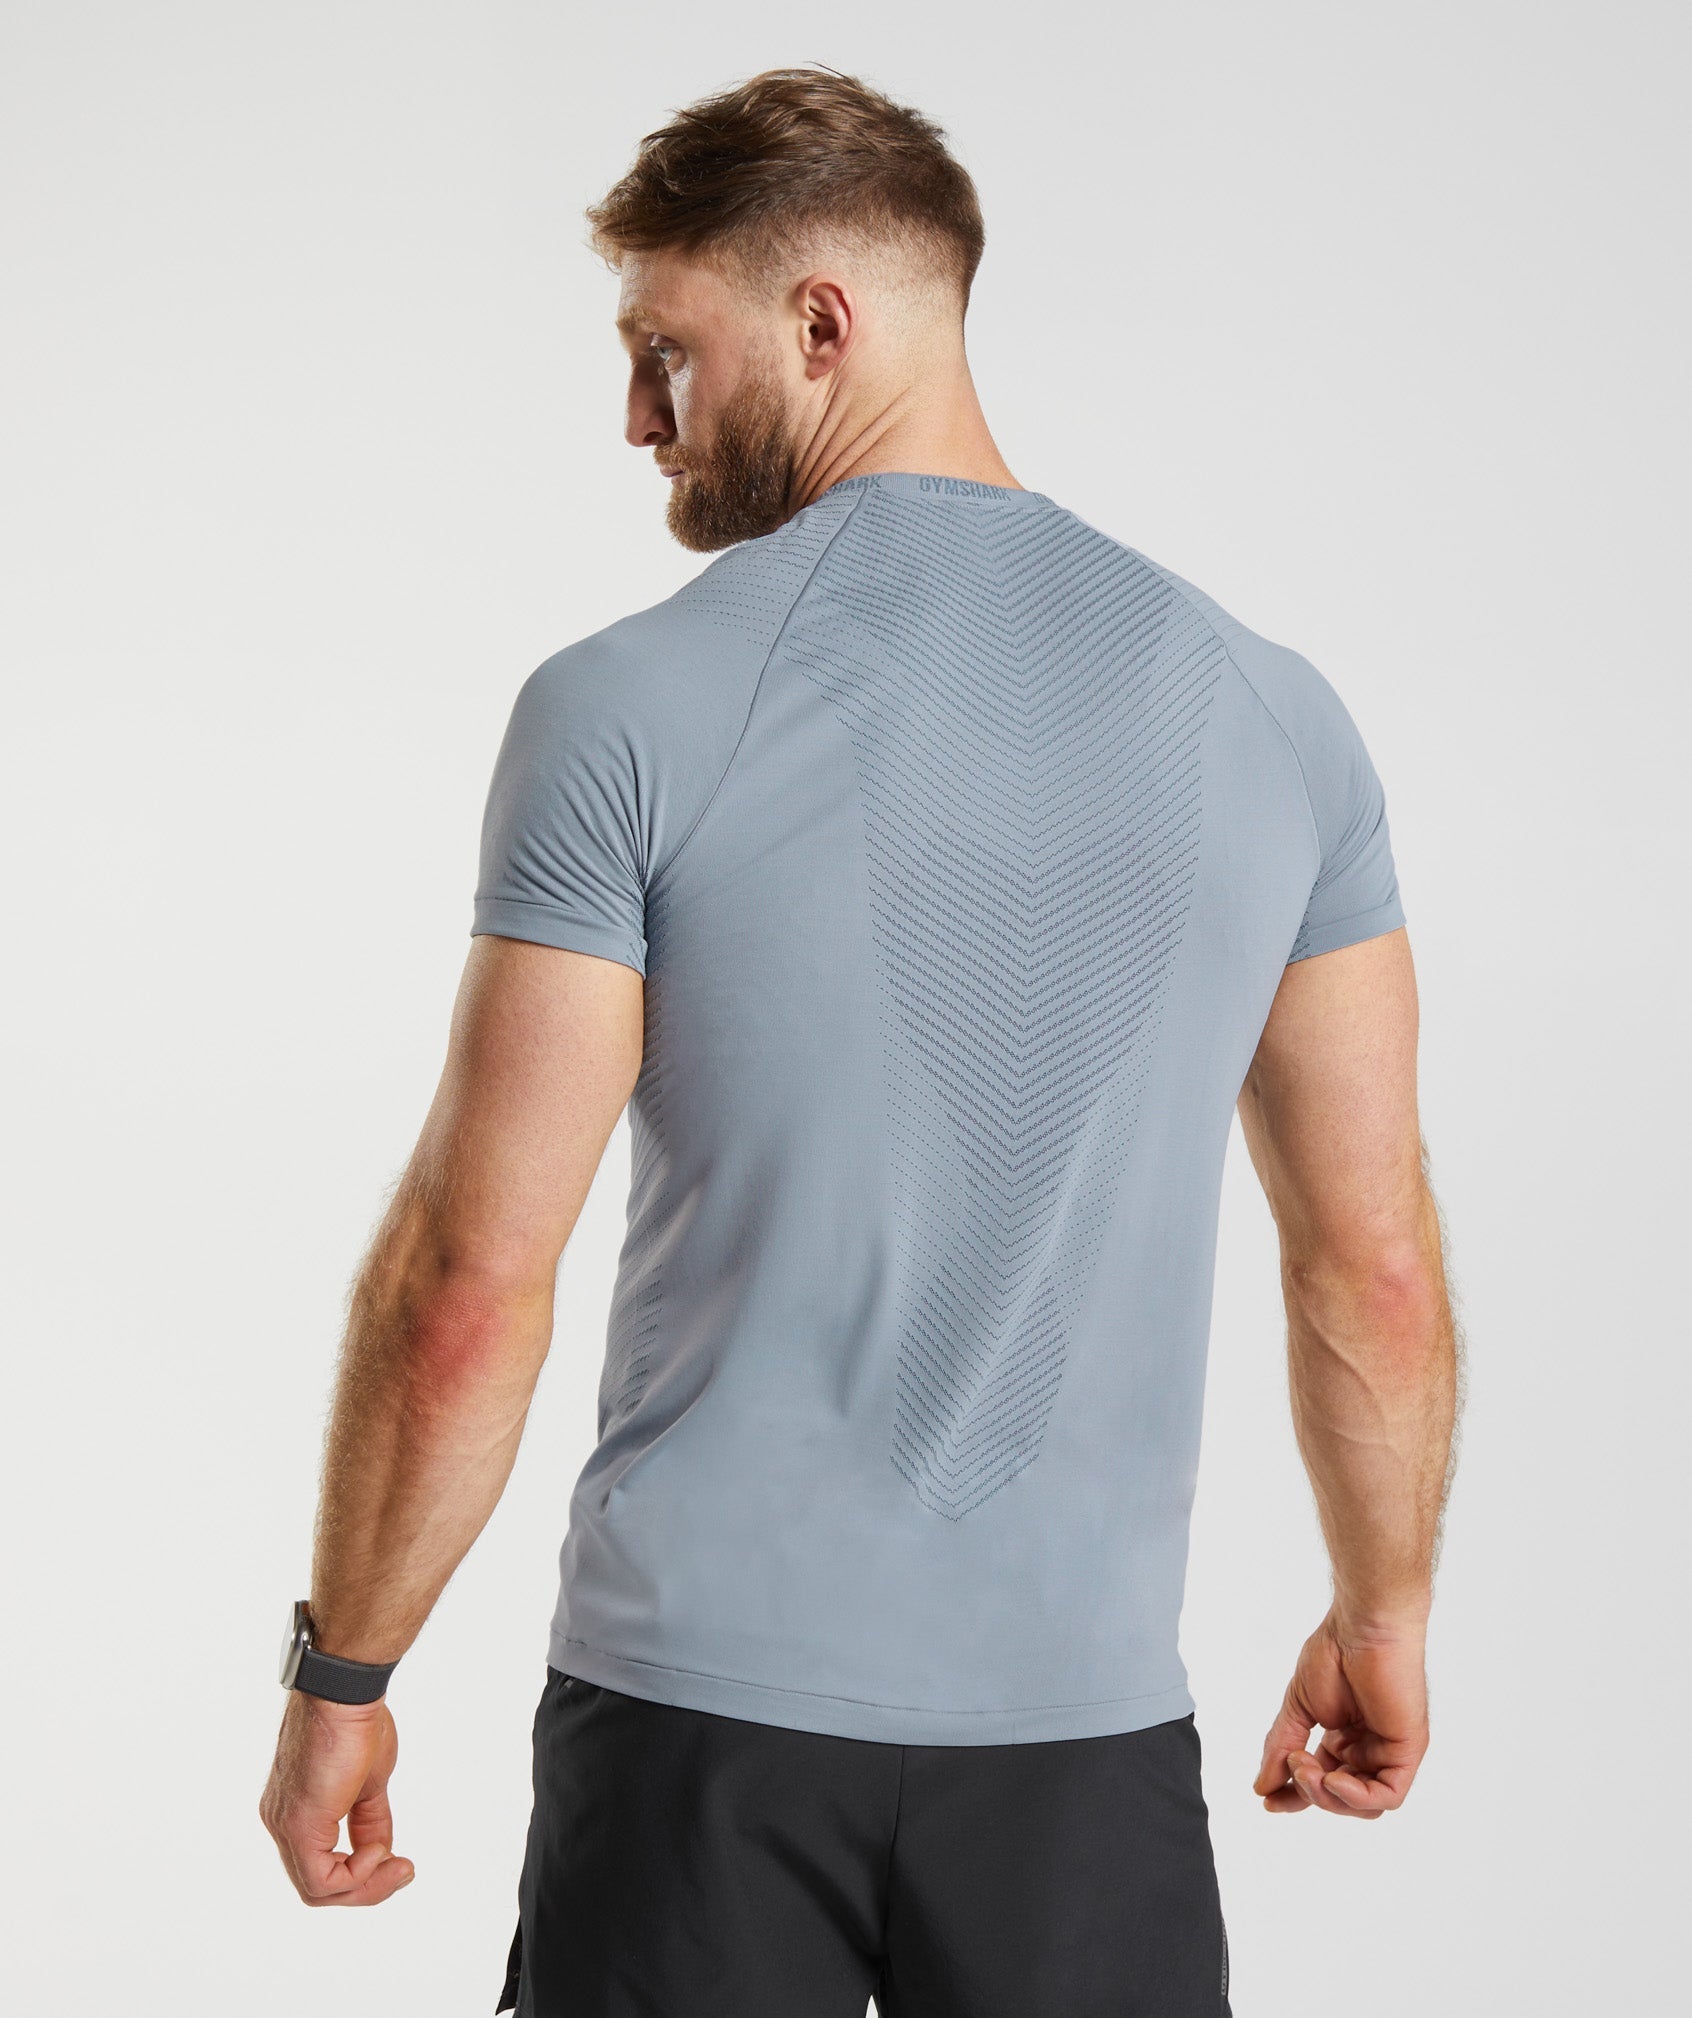 Apex Seamless T-Shirt in Drift Grey/Evening Blue - view 2